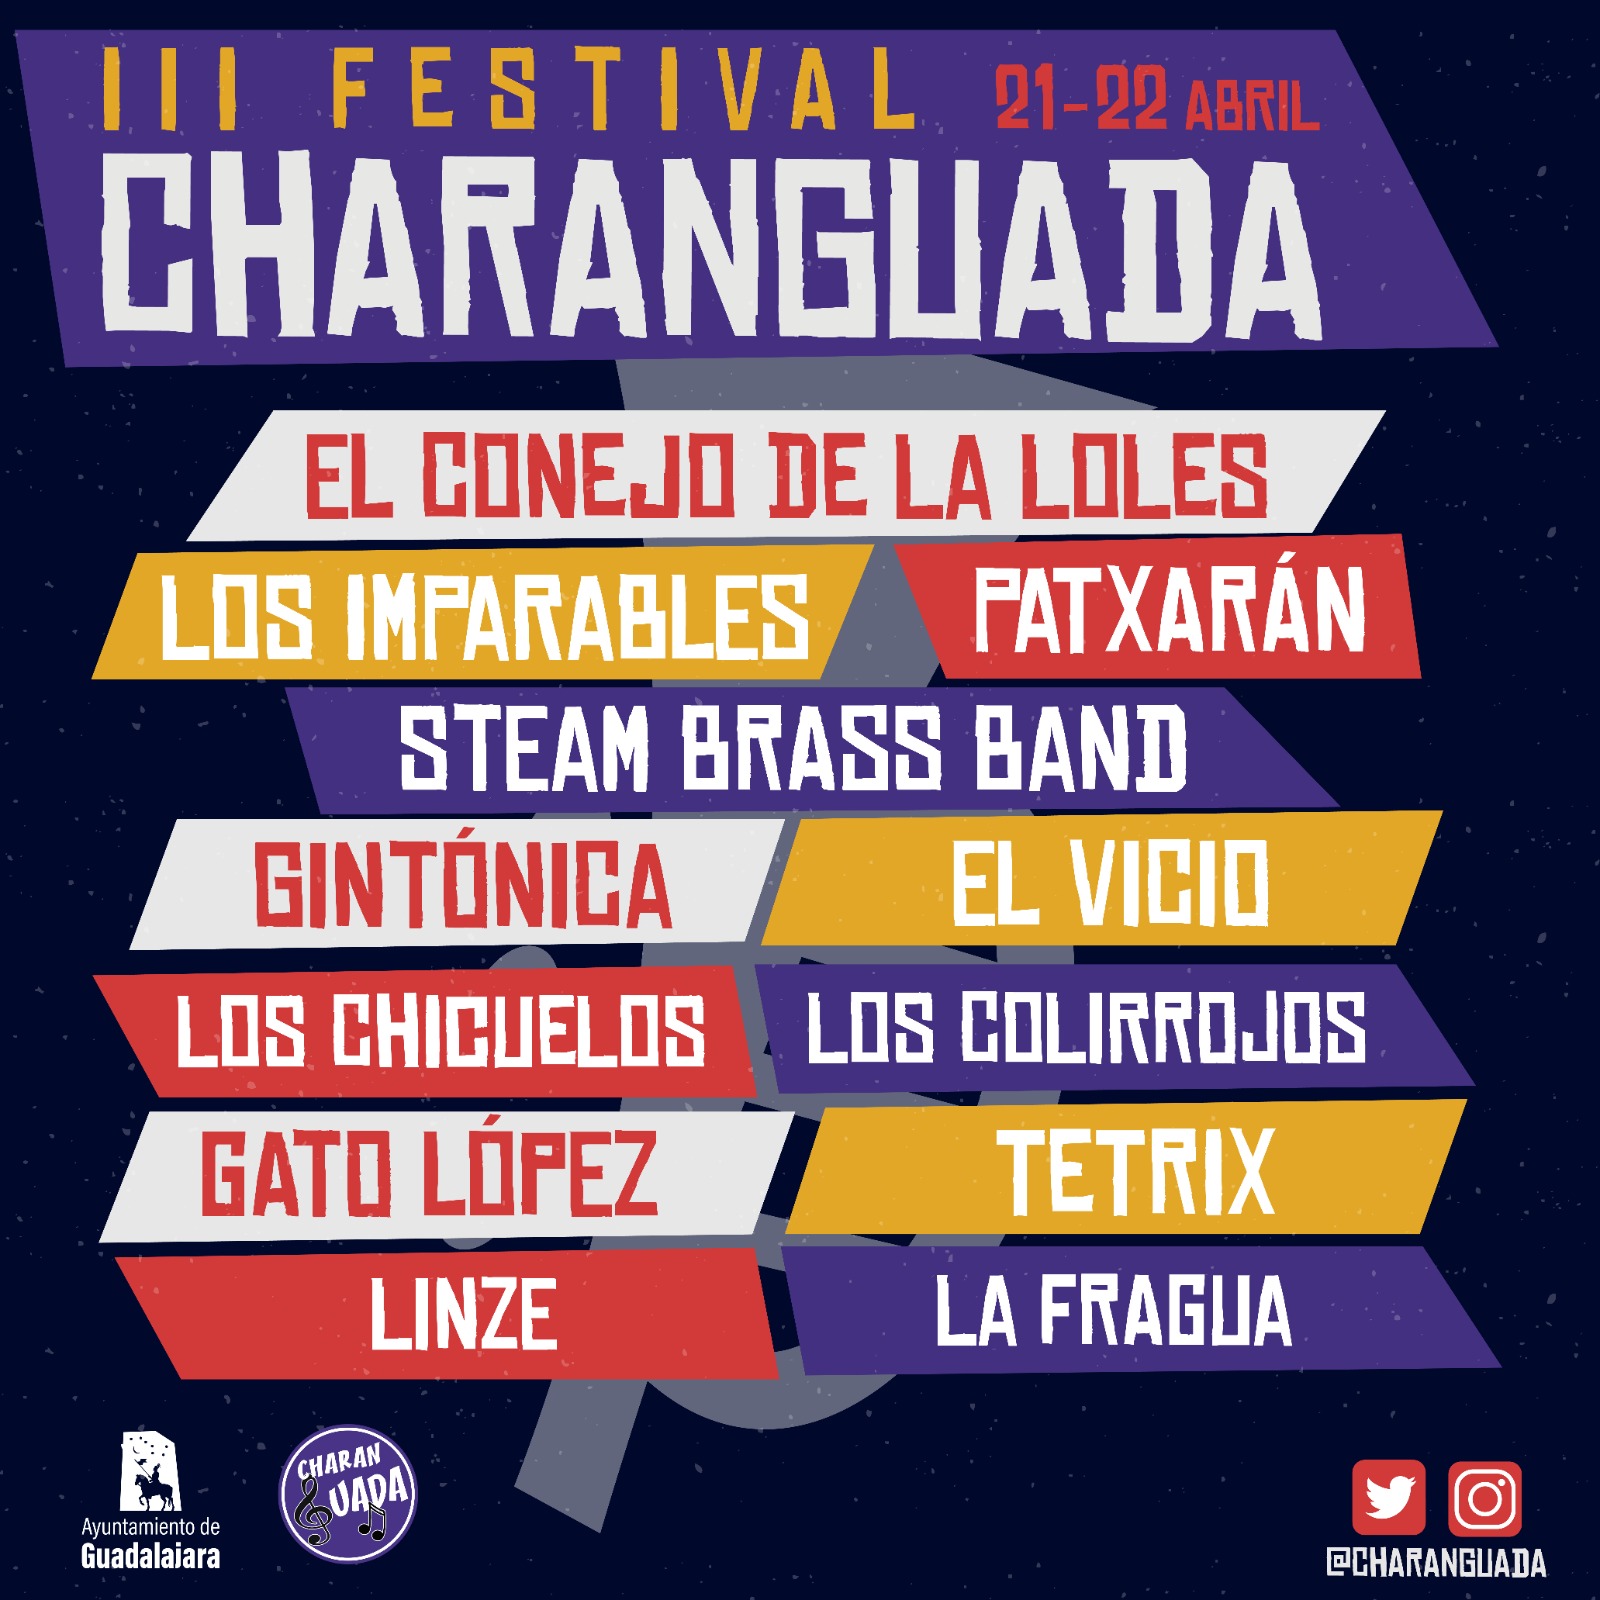 El III Festival Charanguada llega a Guadalajara